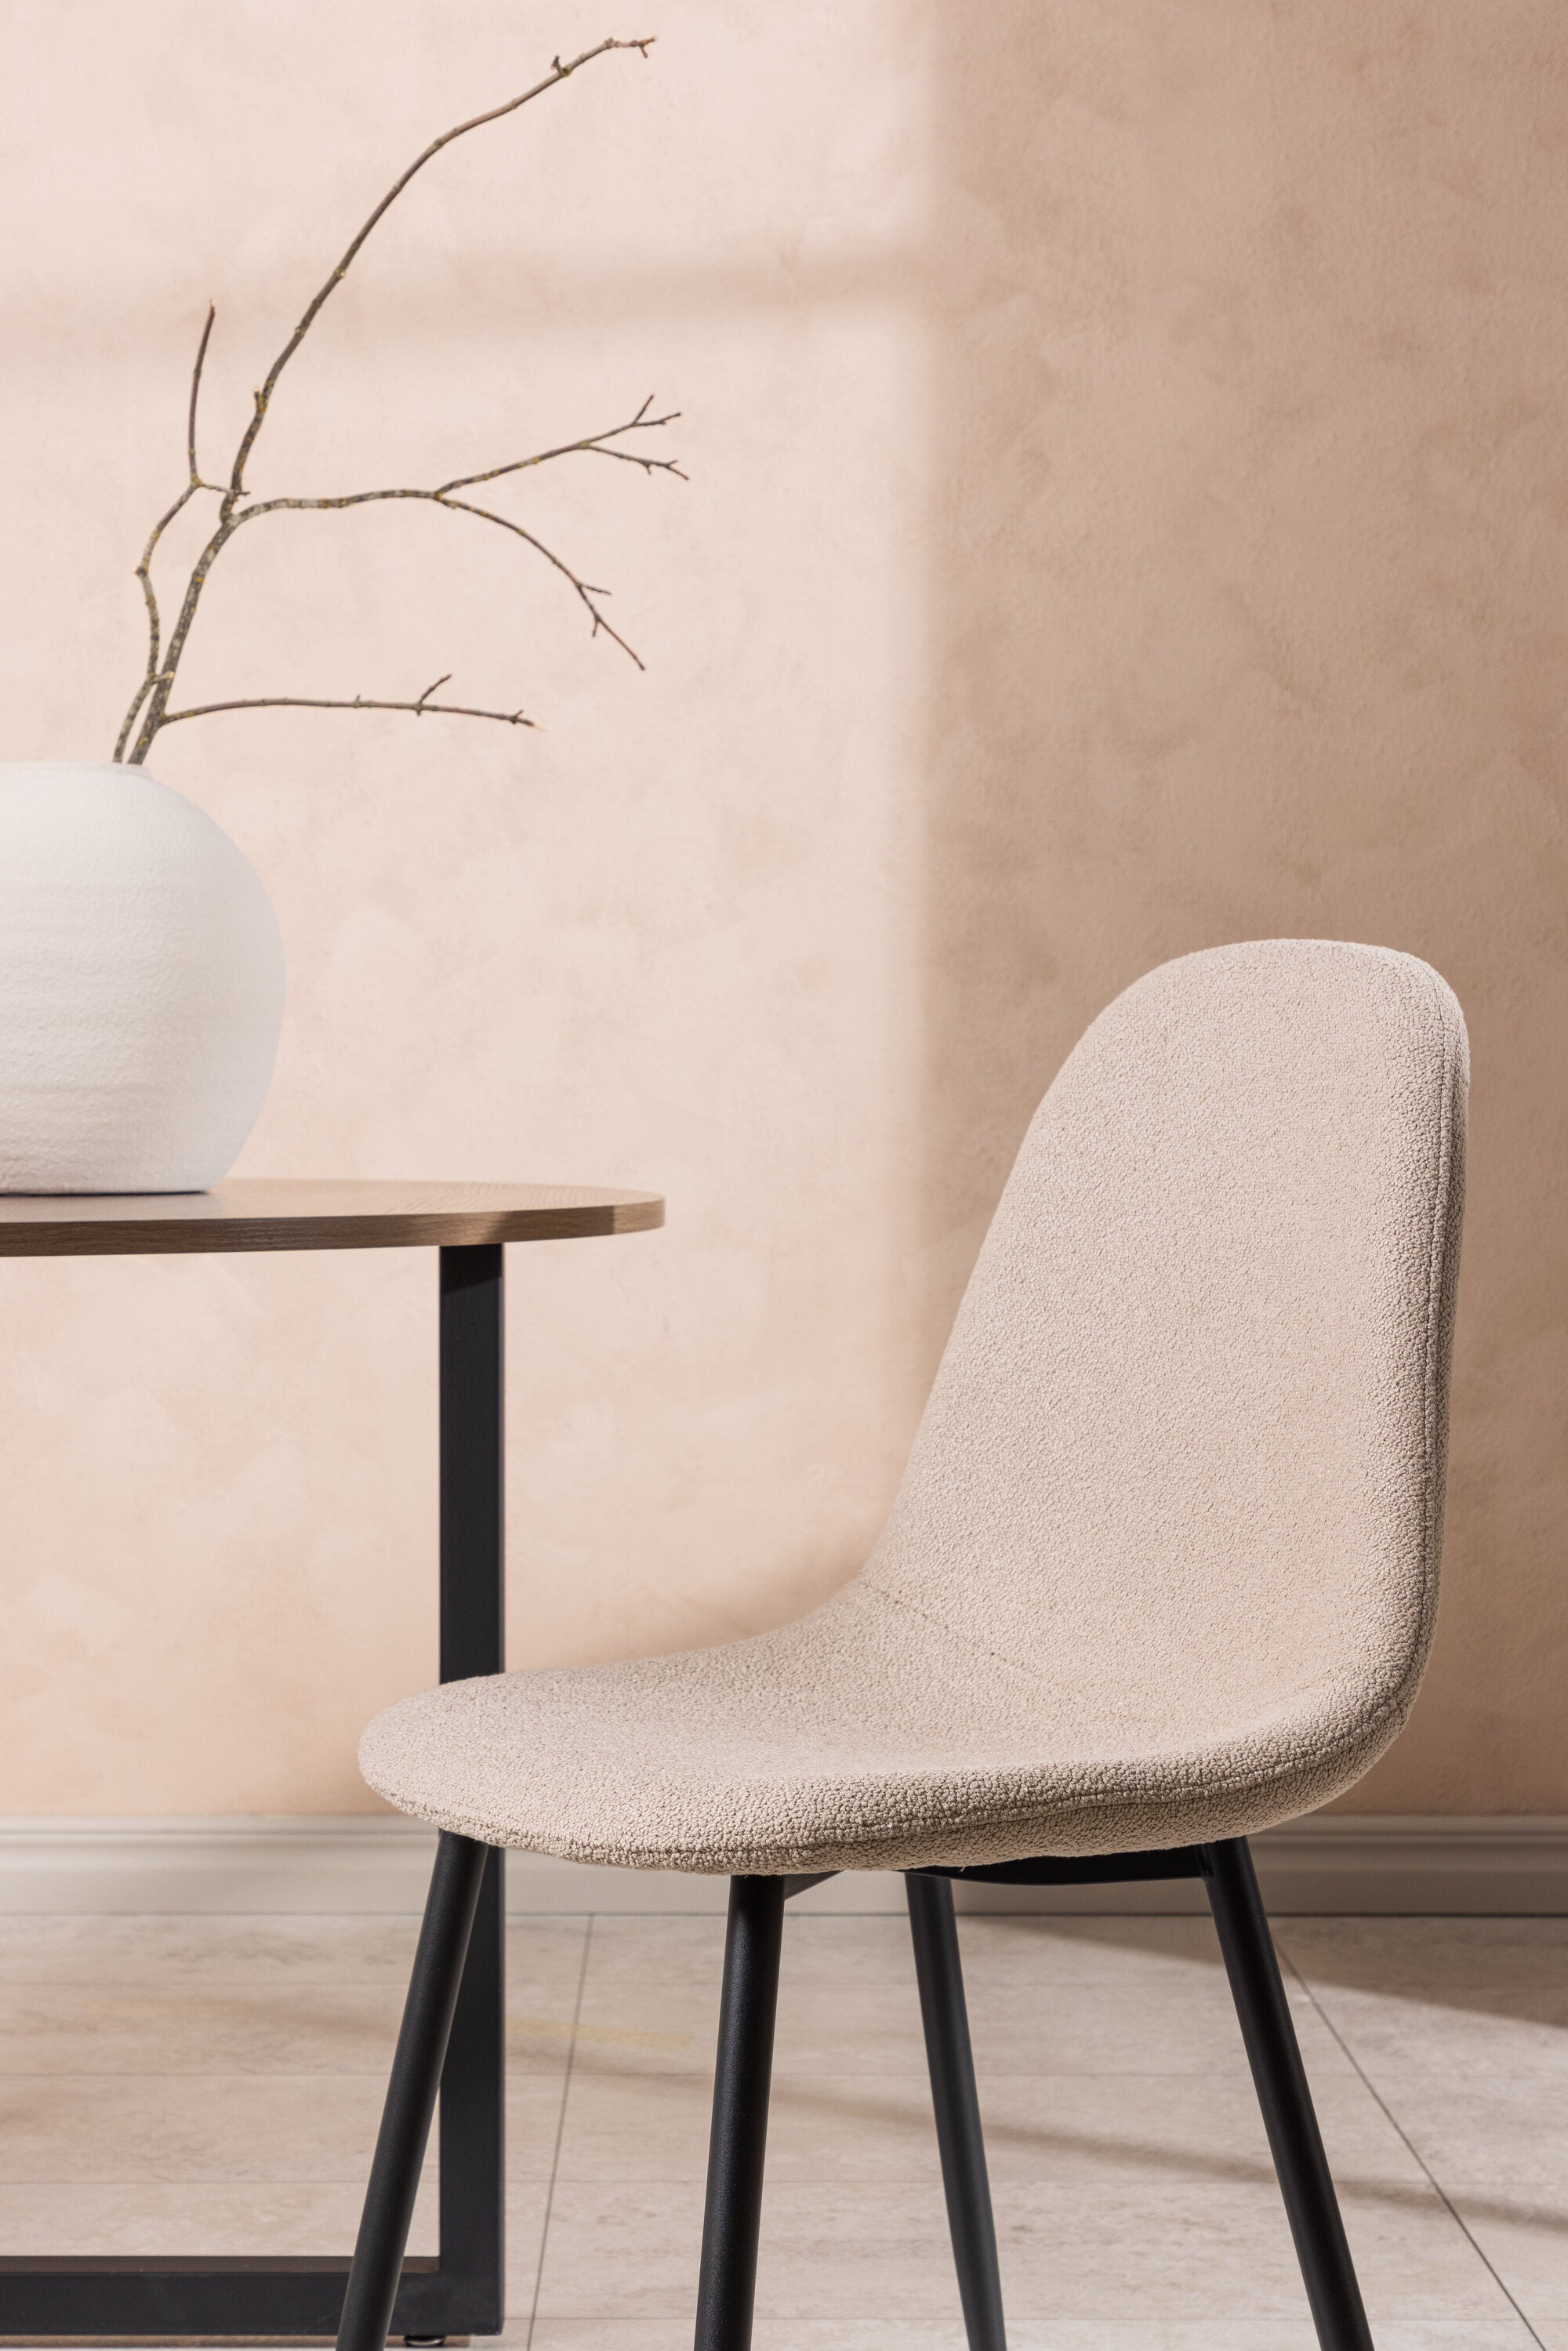 Polar Stuhl in Beige/Schwarz präsentiert im Onlineshop von KAQTU Design AG. Stuhl ist von Venture Home